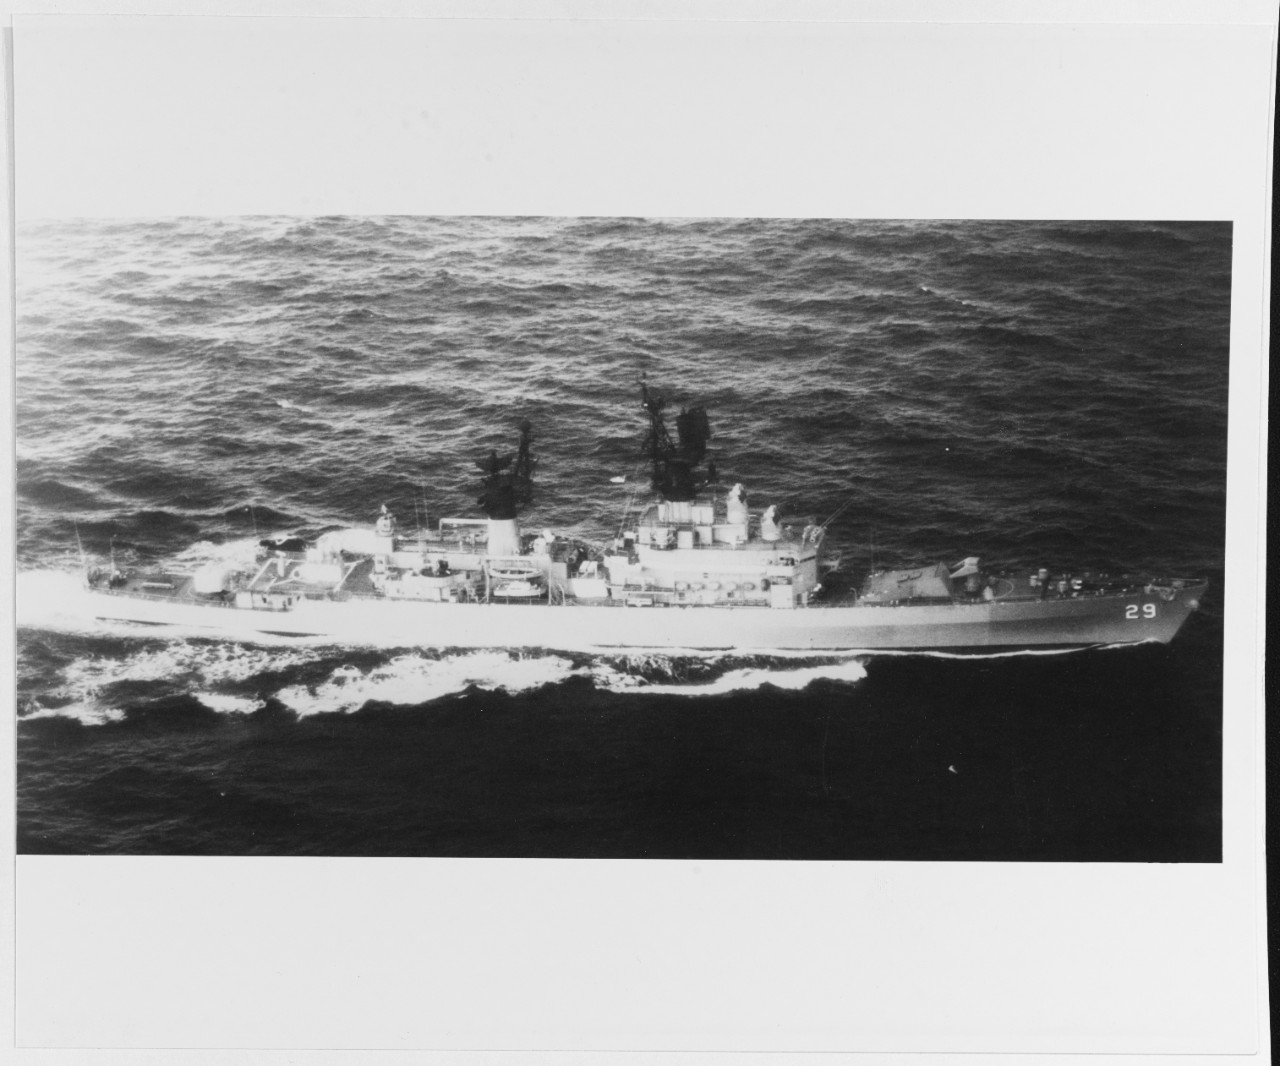 USS JOUETT (DLG-29)